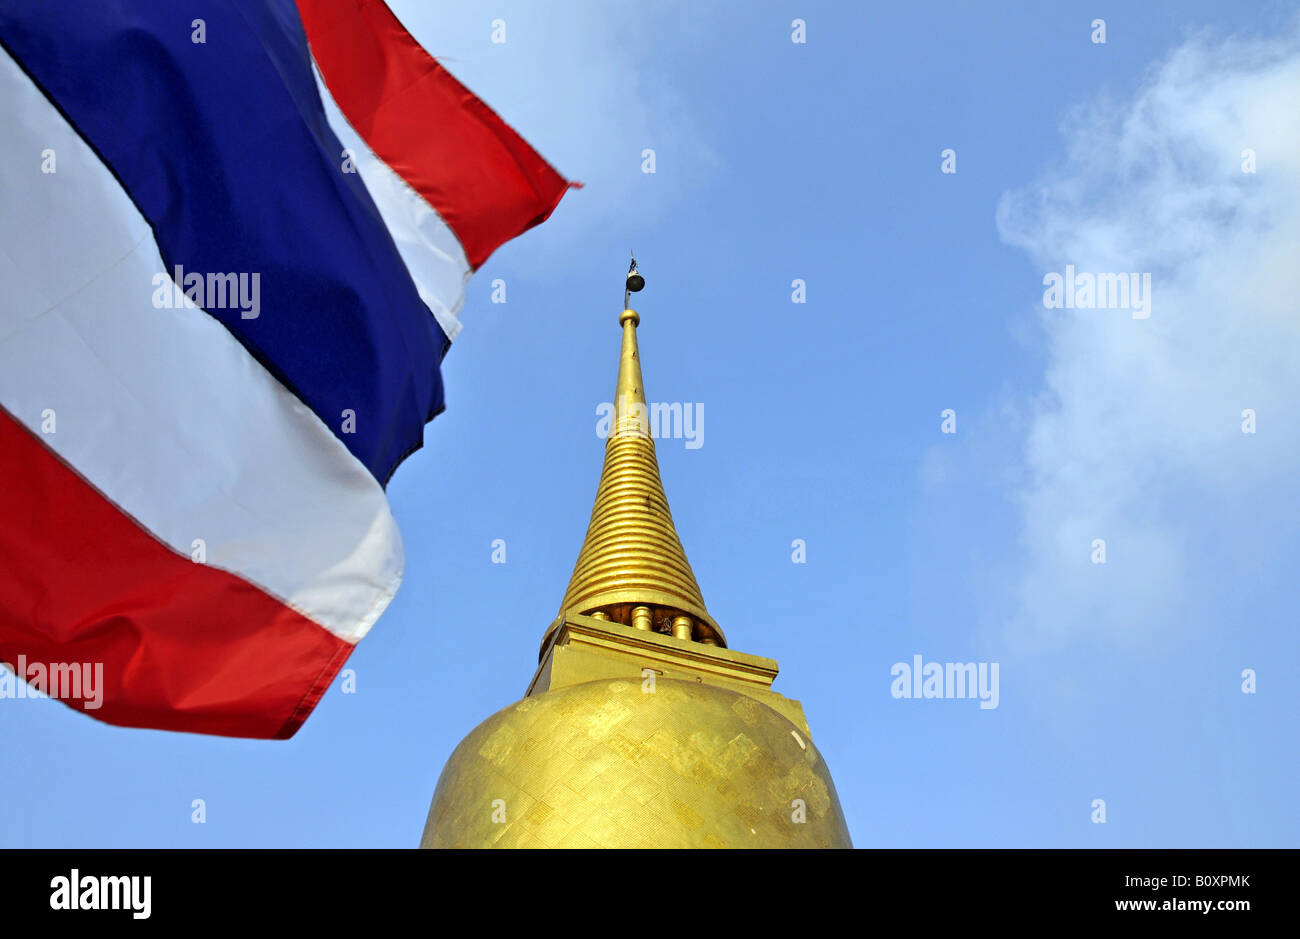 golden dome of the Golden Mount, Thailand, Bangkok Stock Photo